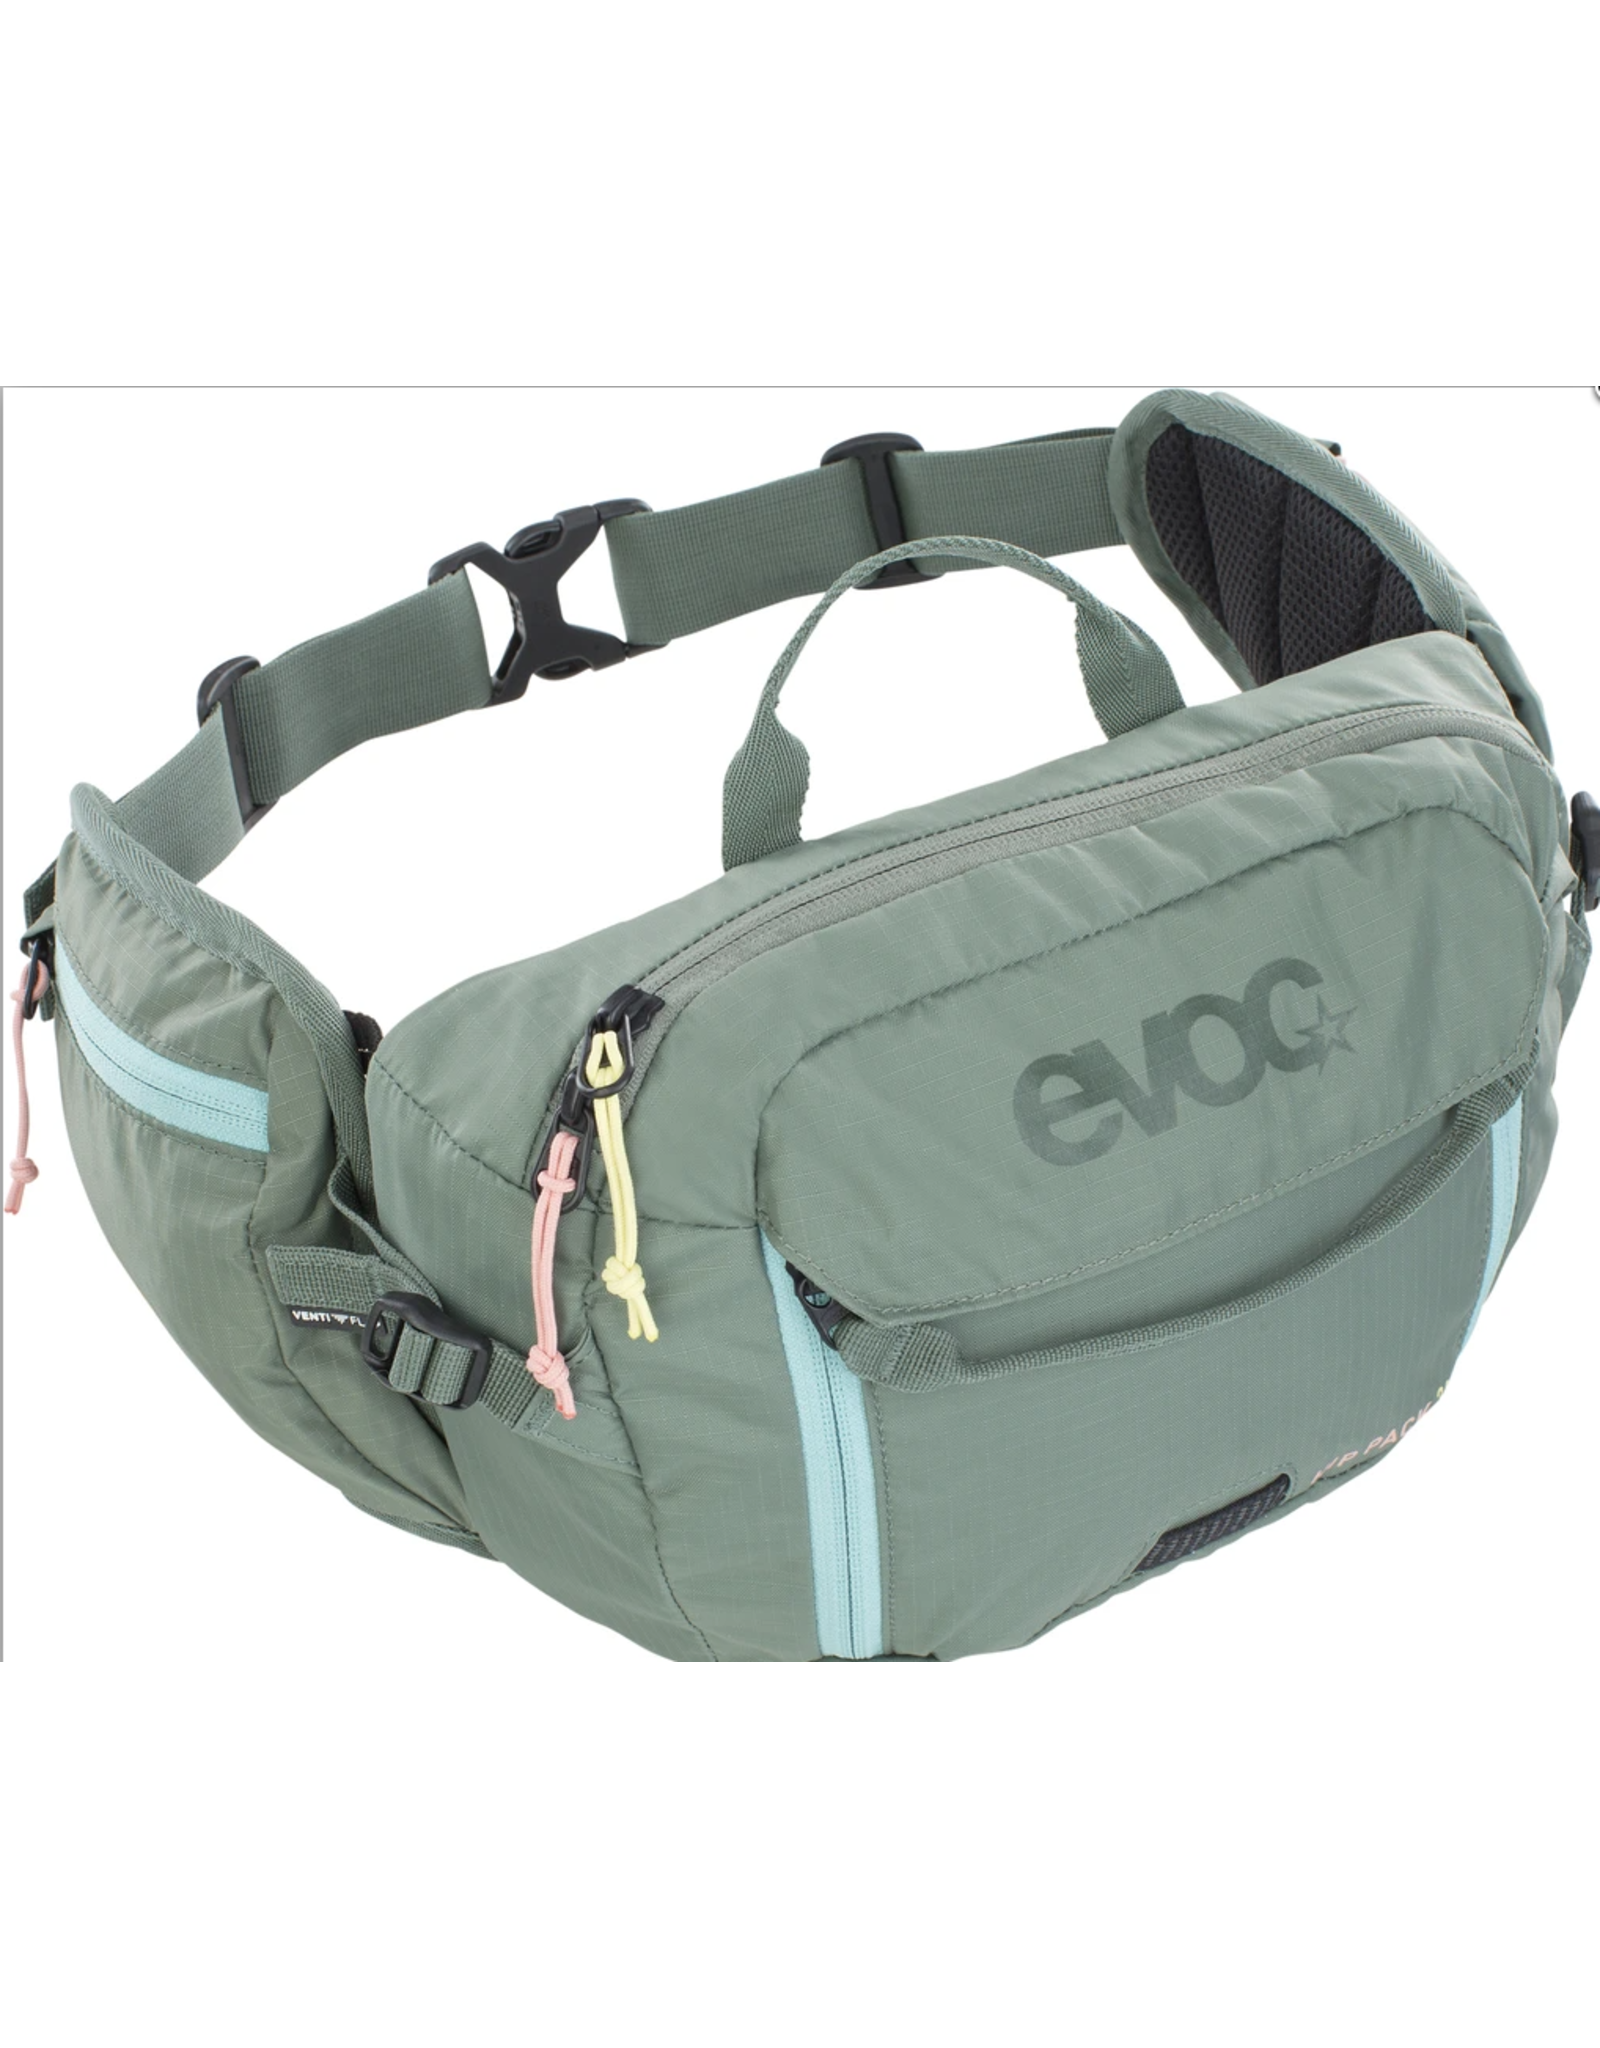 EVOC EVOC Hip Pack 3L + 1.5L Bladder